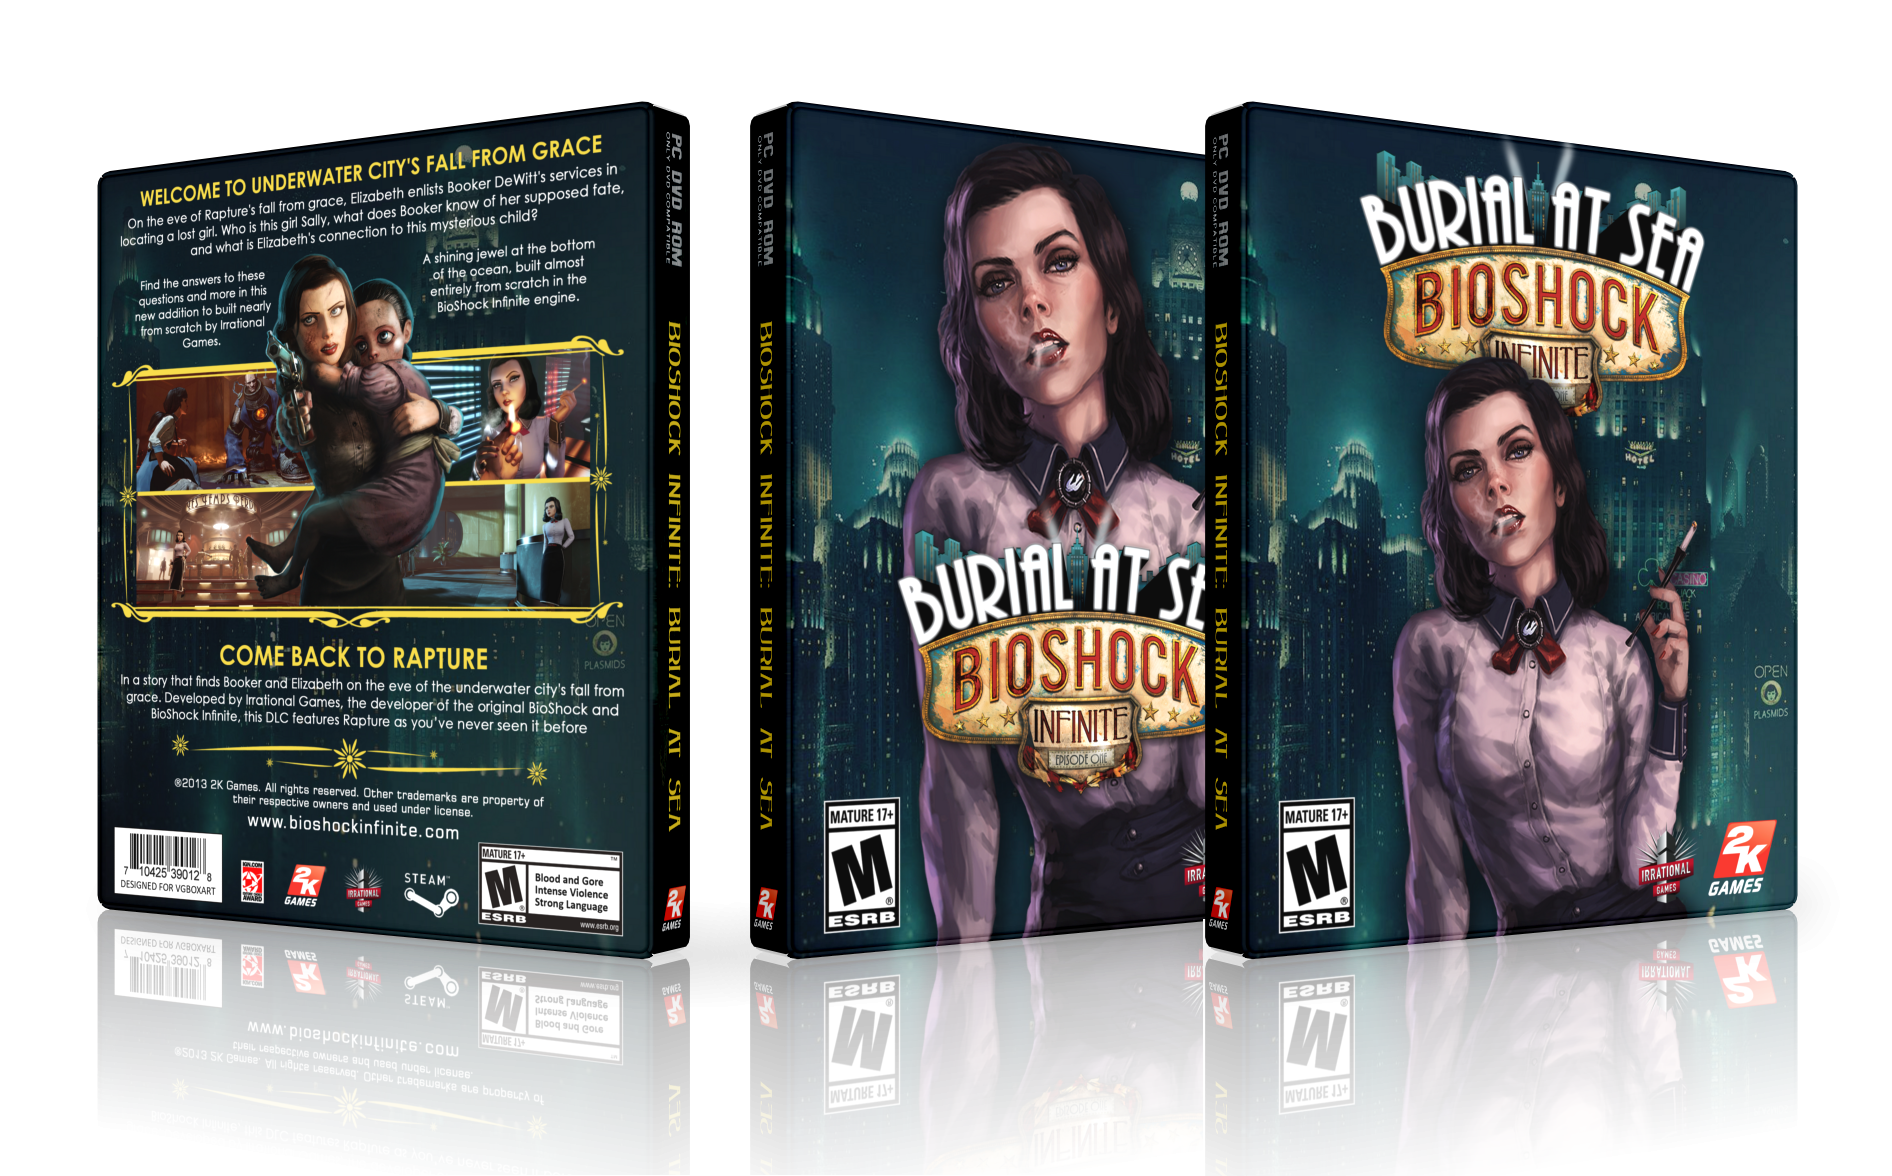 BioShock Infinite: Burial at Sea box cover